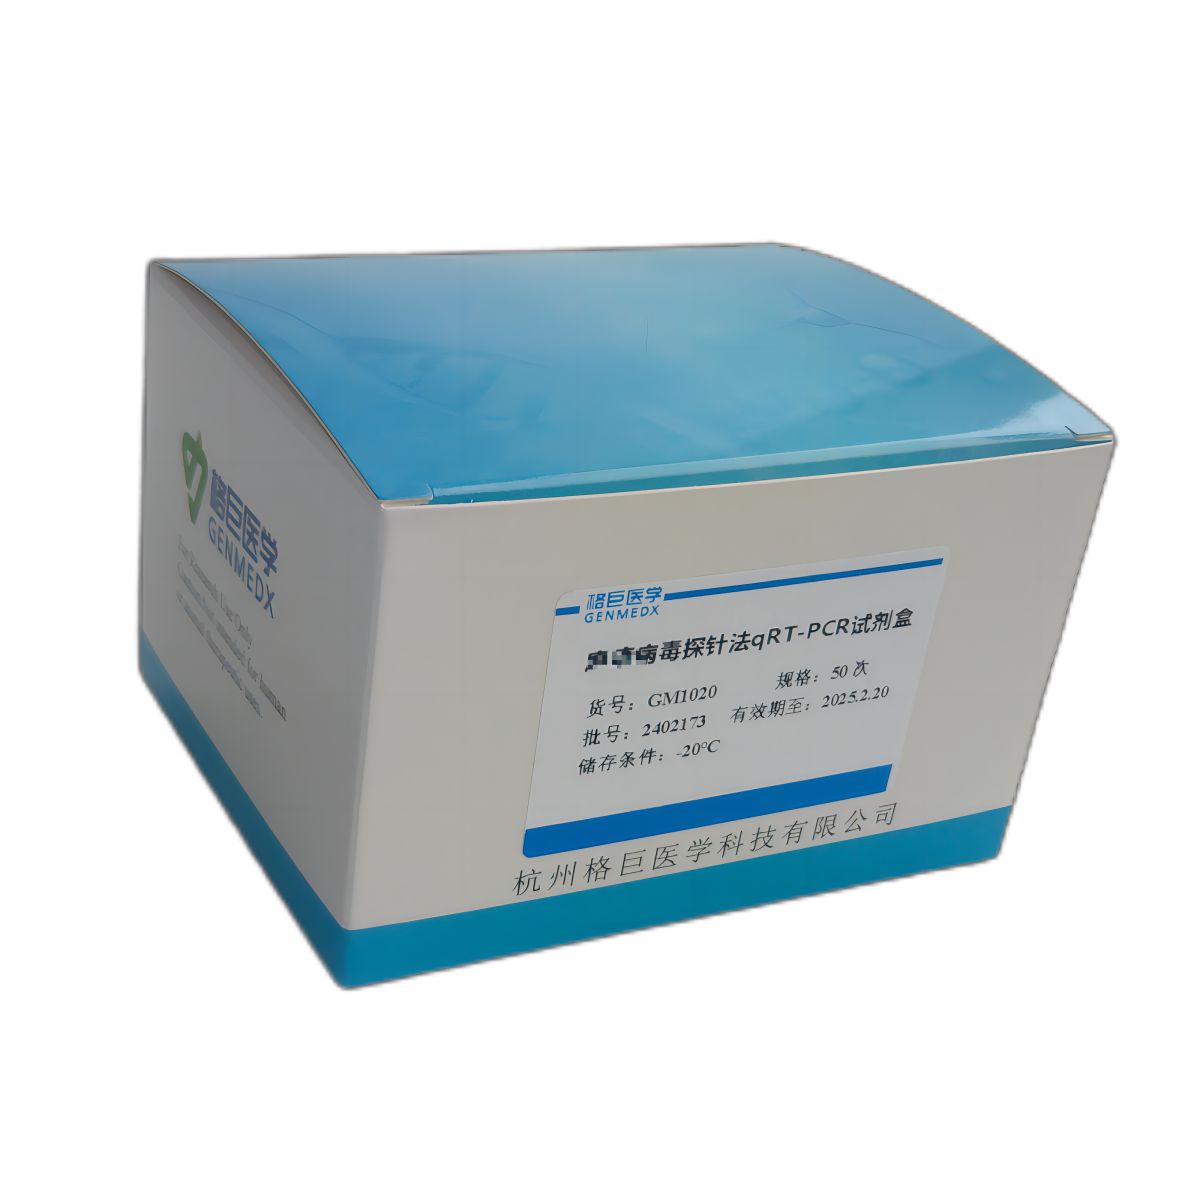 粪肠球菌（Enterococcus faecalis）探针法荧光定量PCR试剂盒